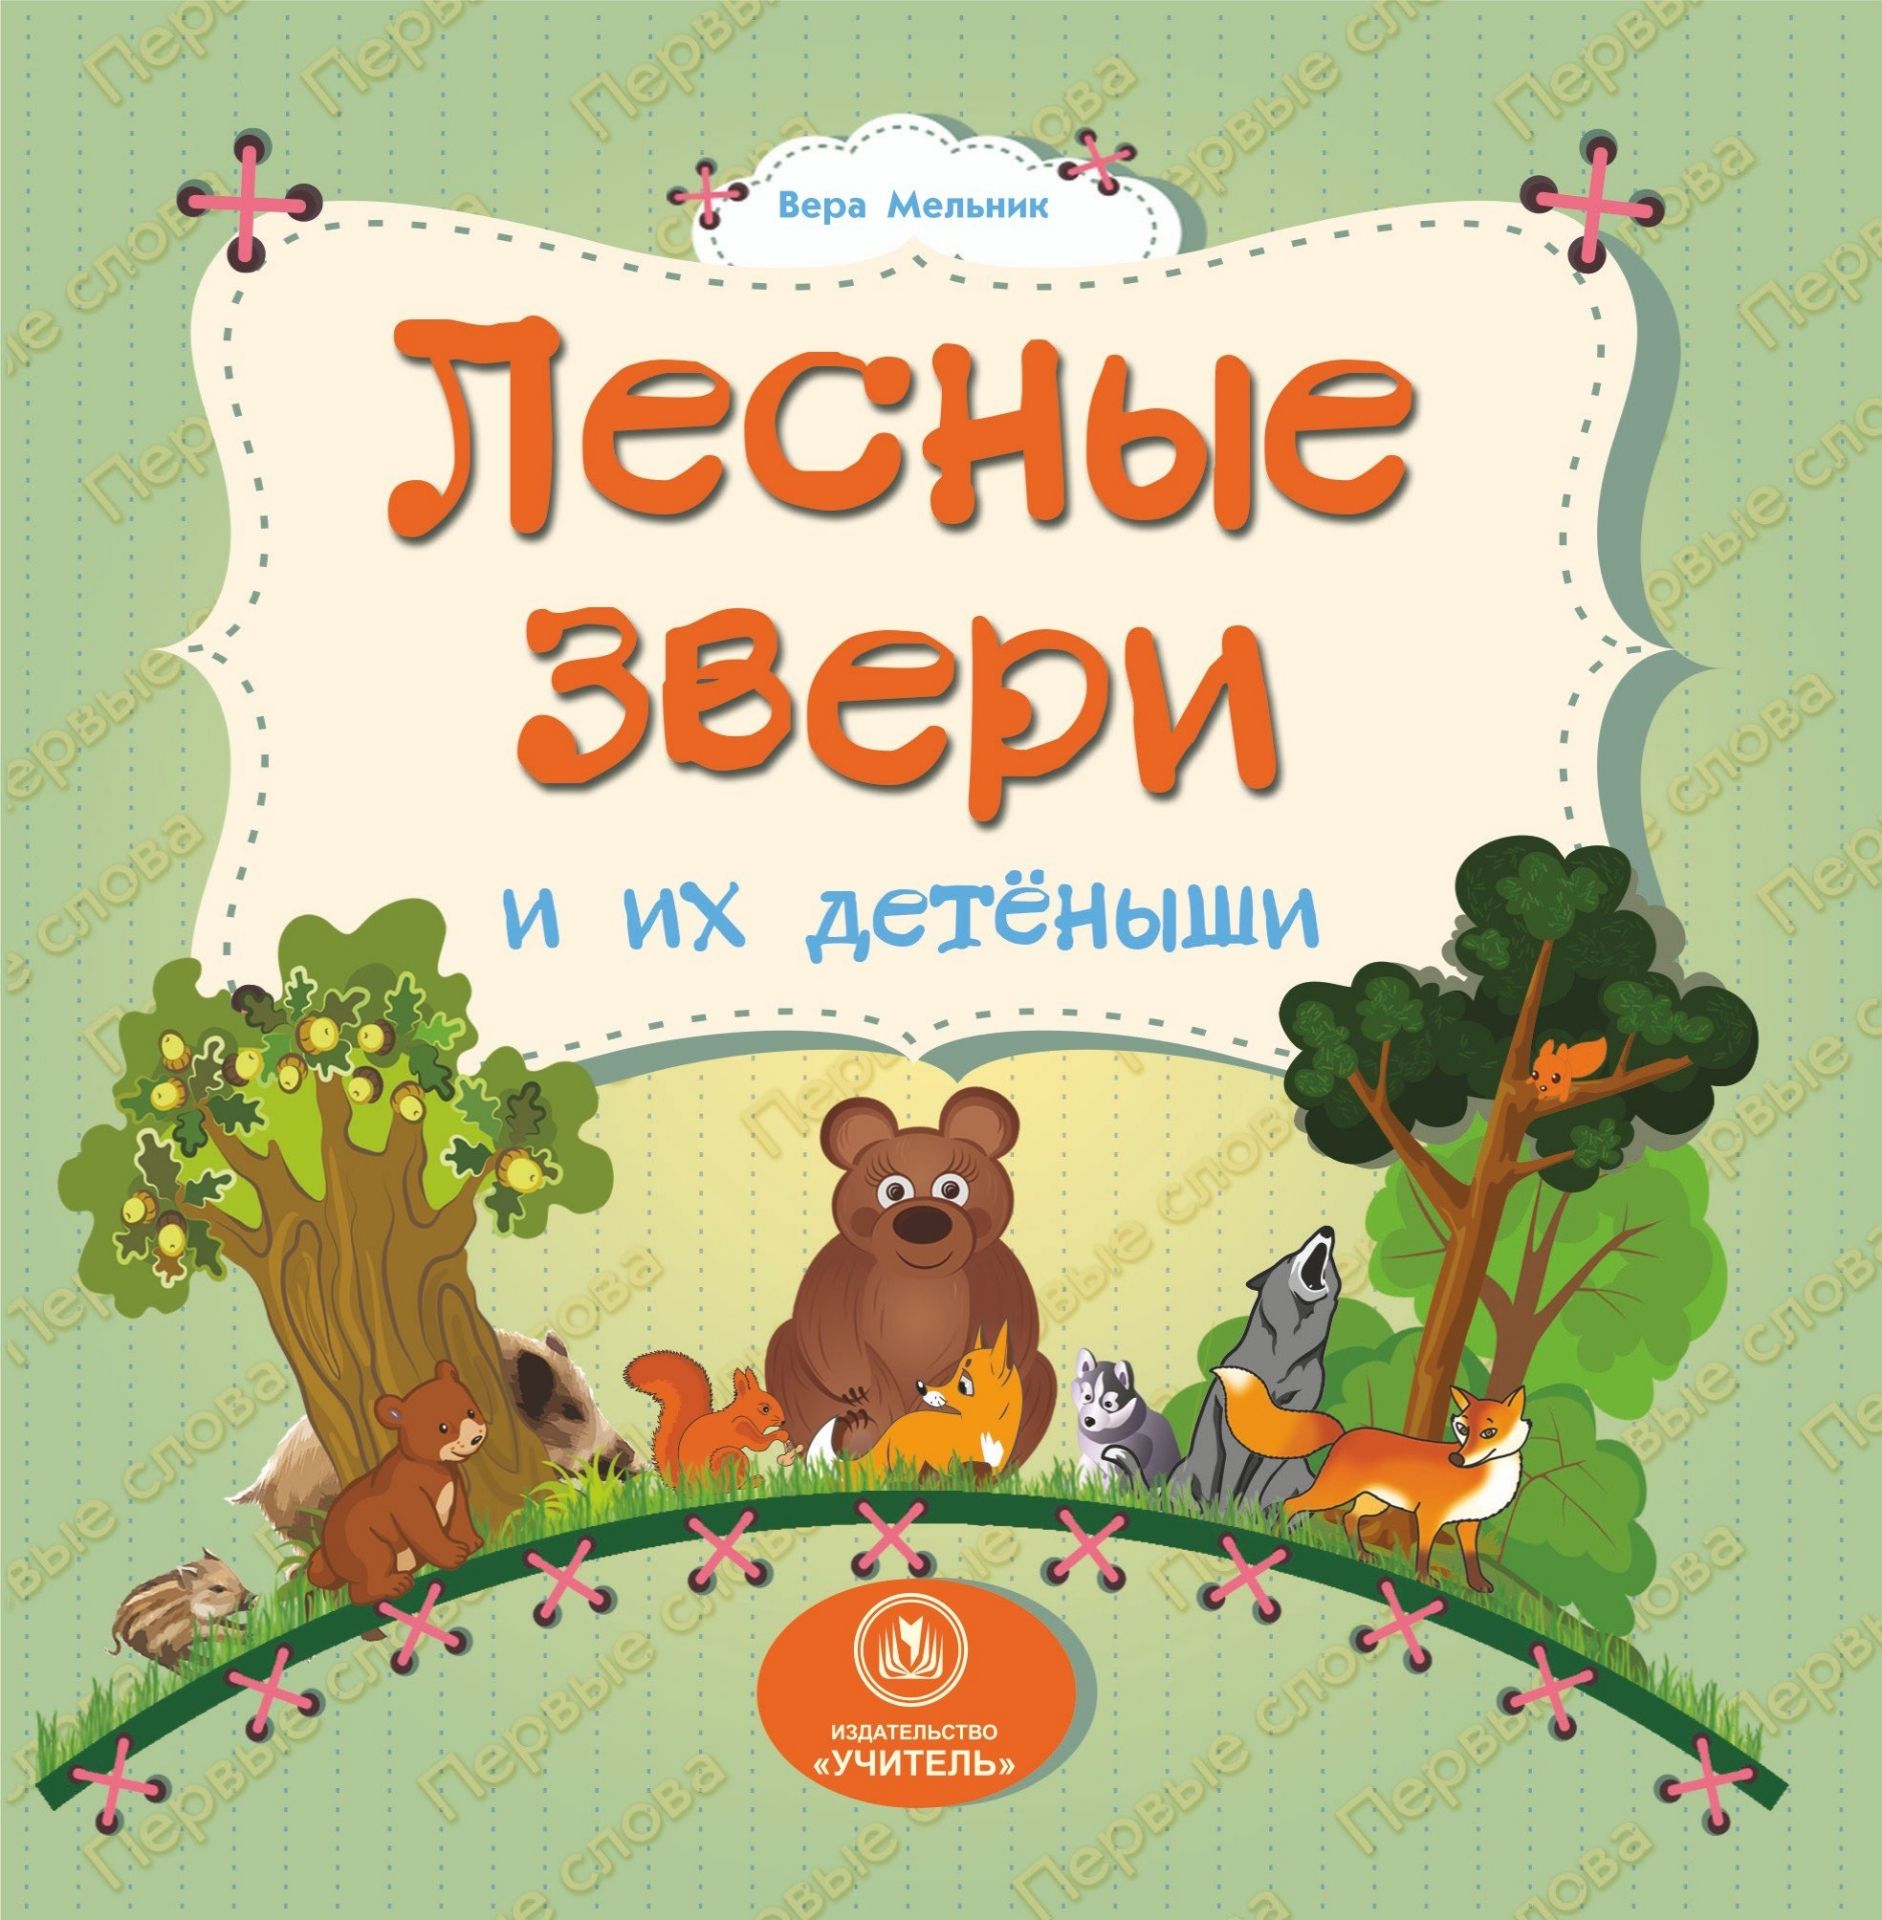 Лесные звери и их детеныши: литературно-художественное издание для чтения родителями детям